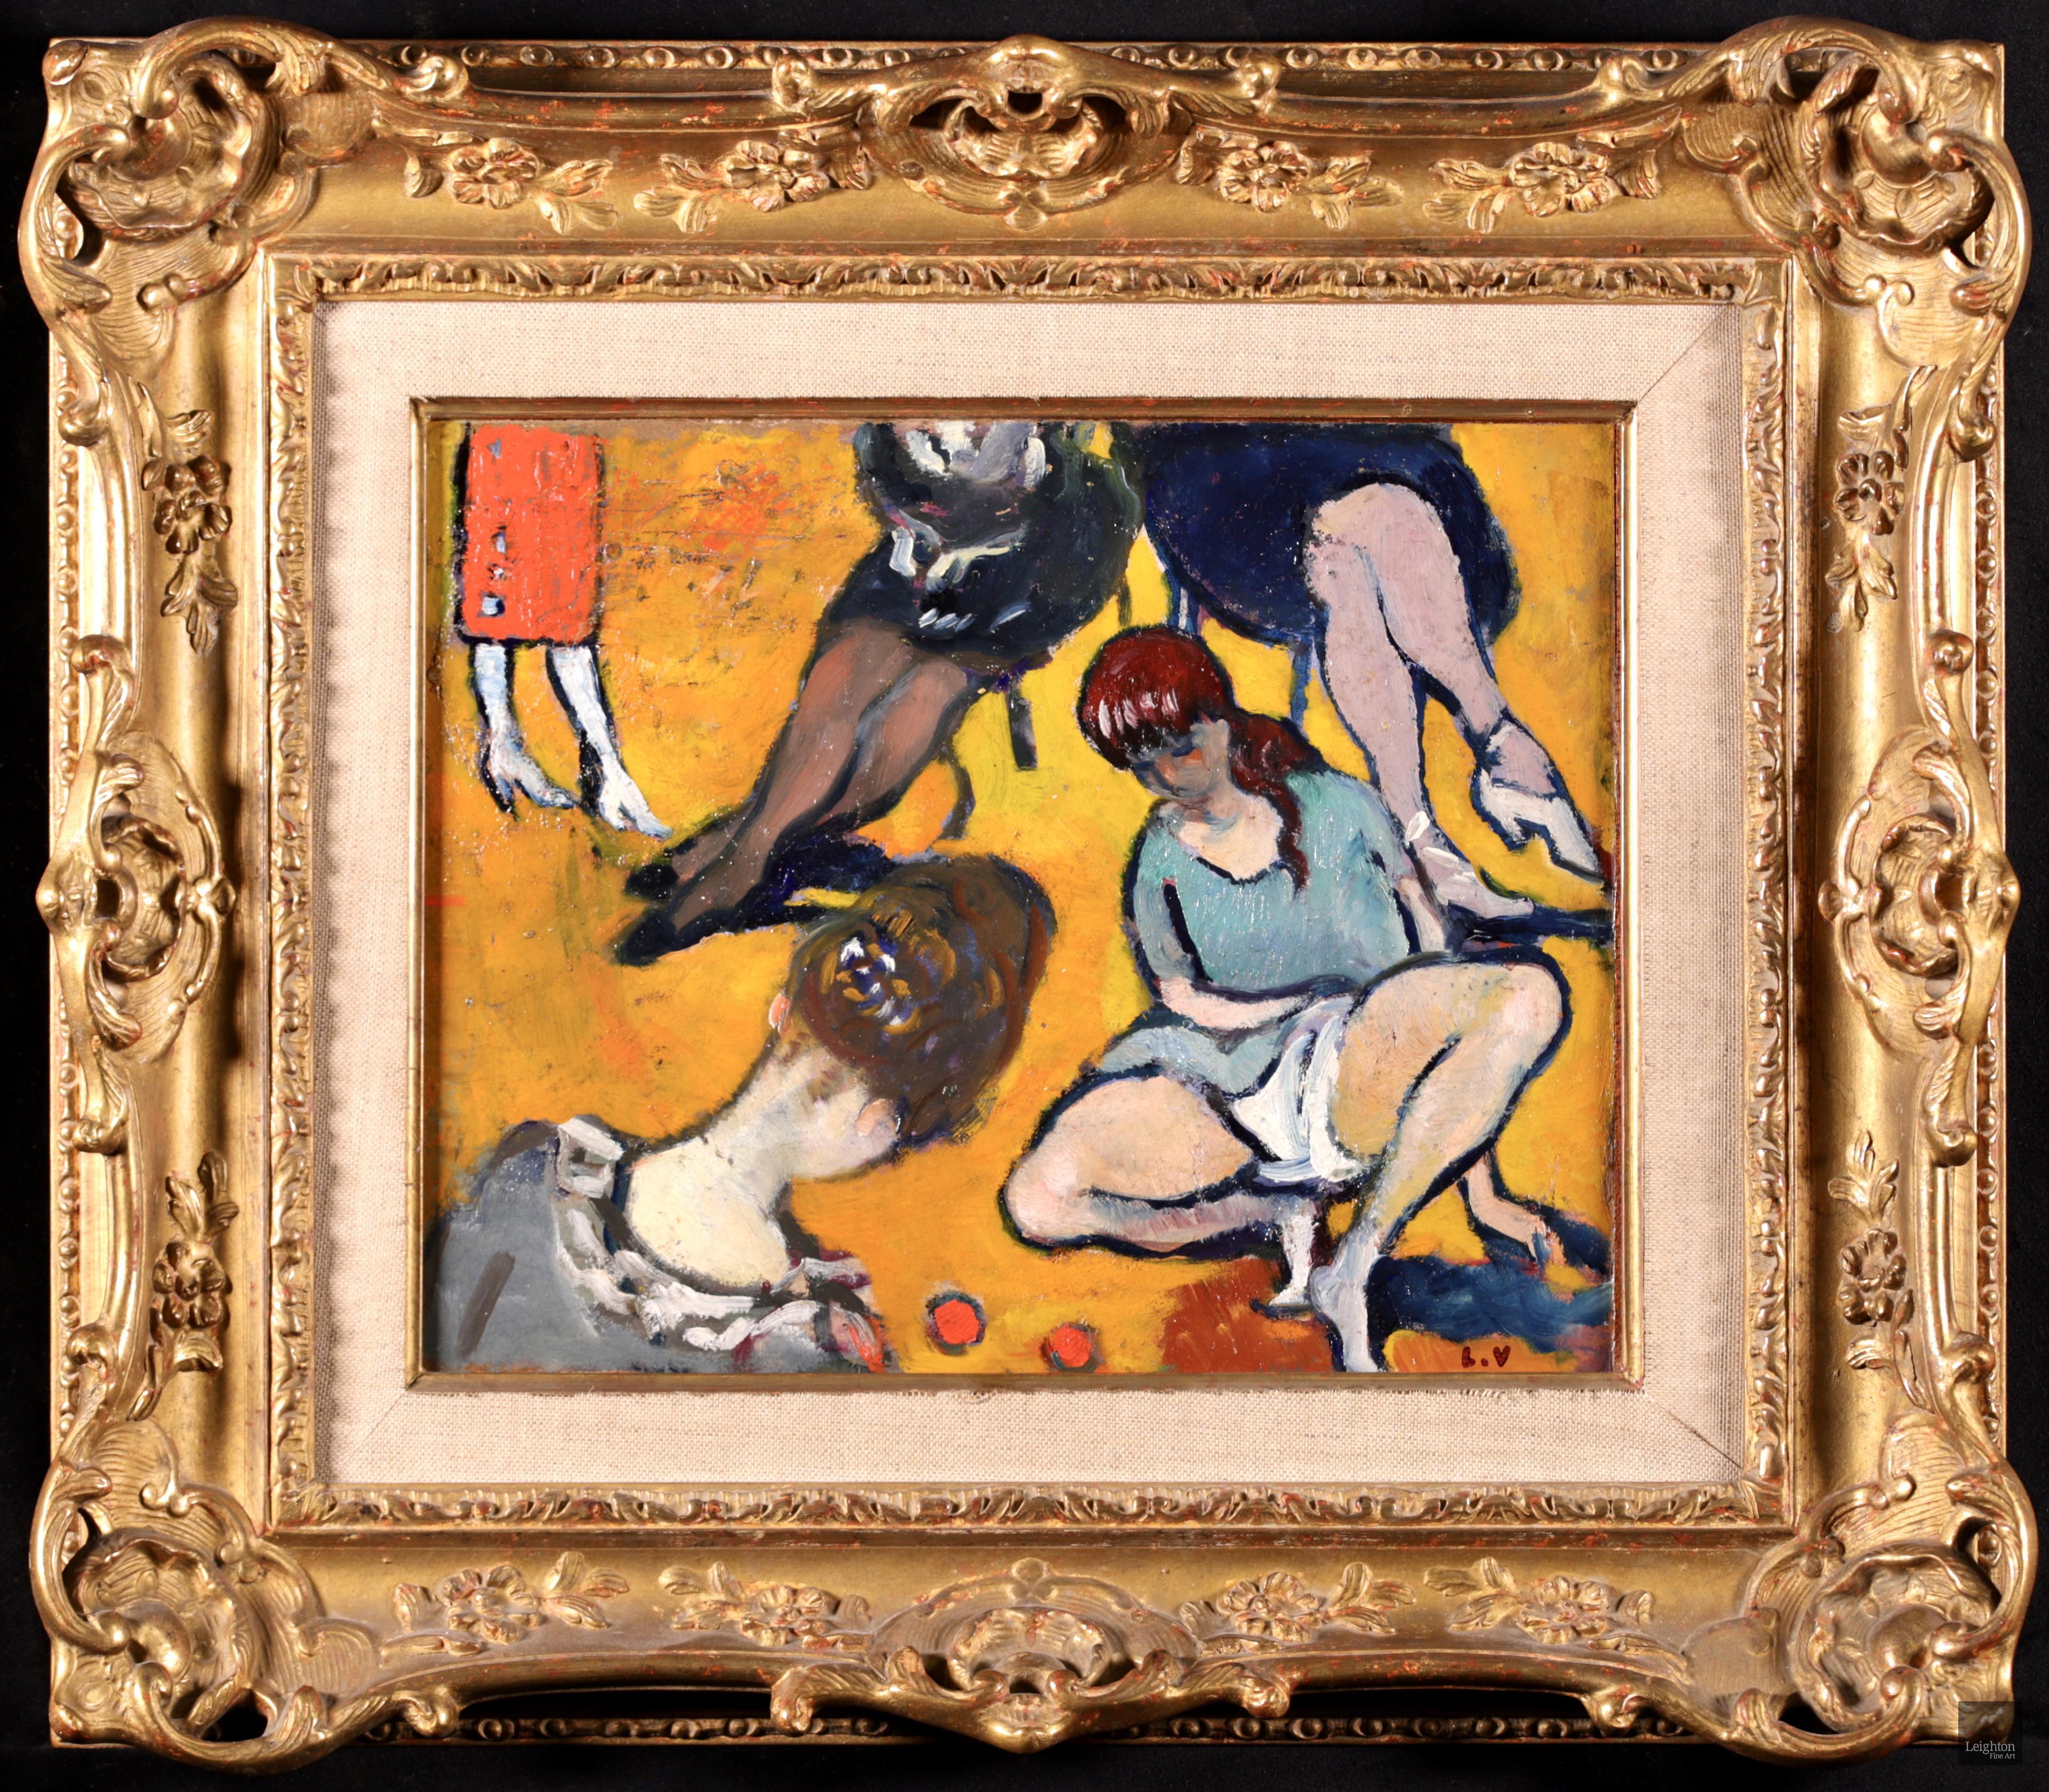 Huile figurative fauviste sur panneau signée par le peintre français Louis Valtat. L'œuvre représente deux filles jouant avec des billes rouges. Derrière eux, nous voyons les jambes de femmes élégamment vêtues - deux assises sur une chaise et une